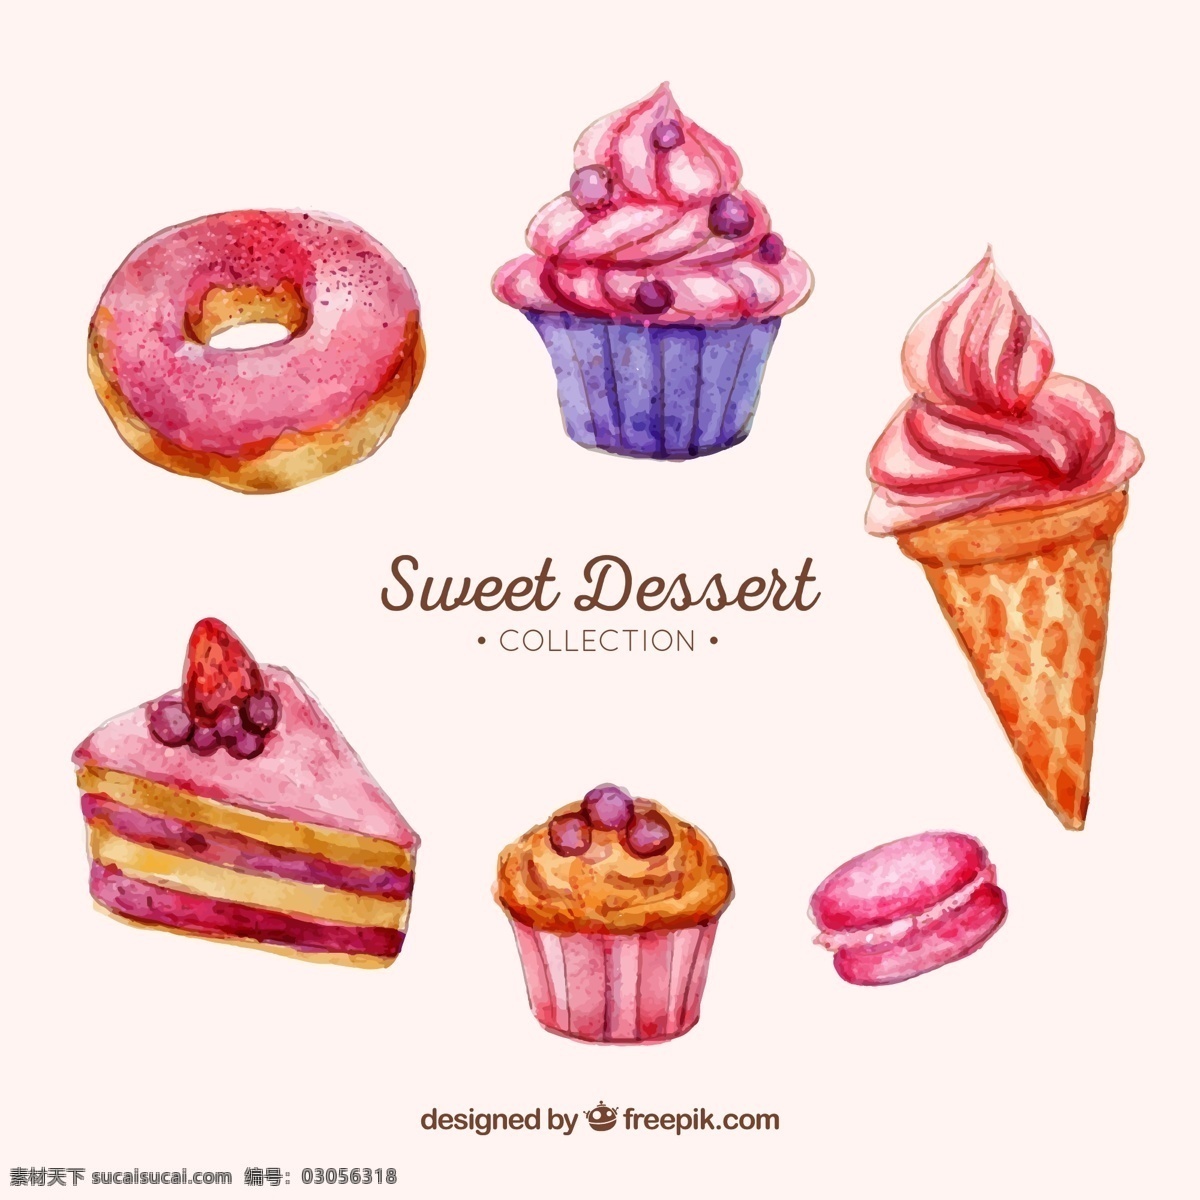 水彩 绘 甜点 组合 水彩绘 圆环 甜甜圈 纸杯蛋糕 冰淇淋 三角蛋糕 生活用品 生活百科 餐饮美食